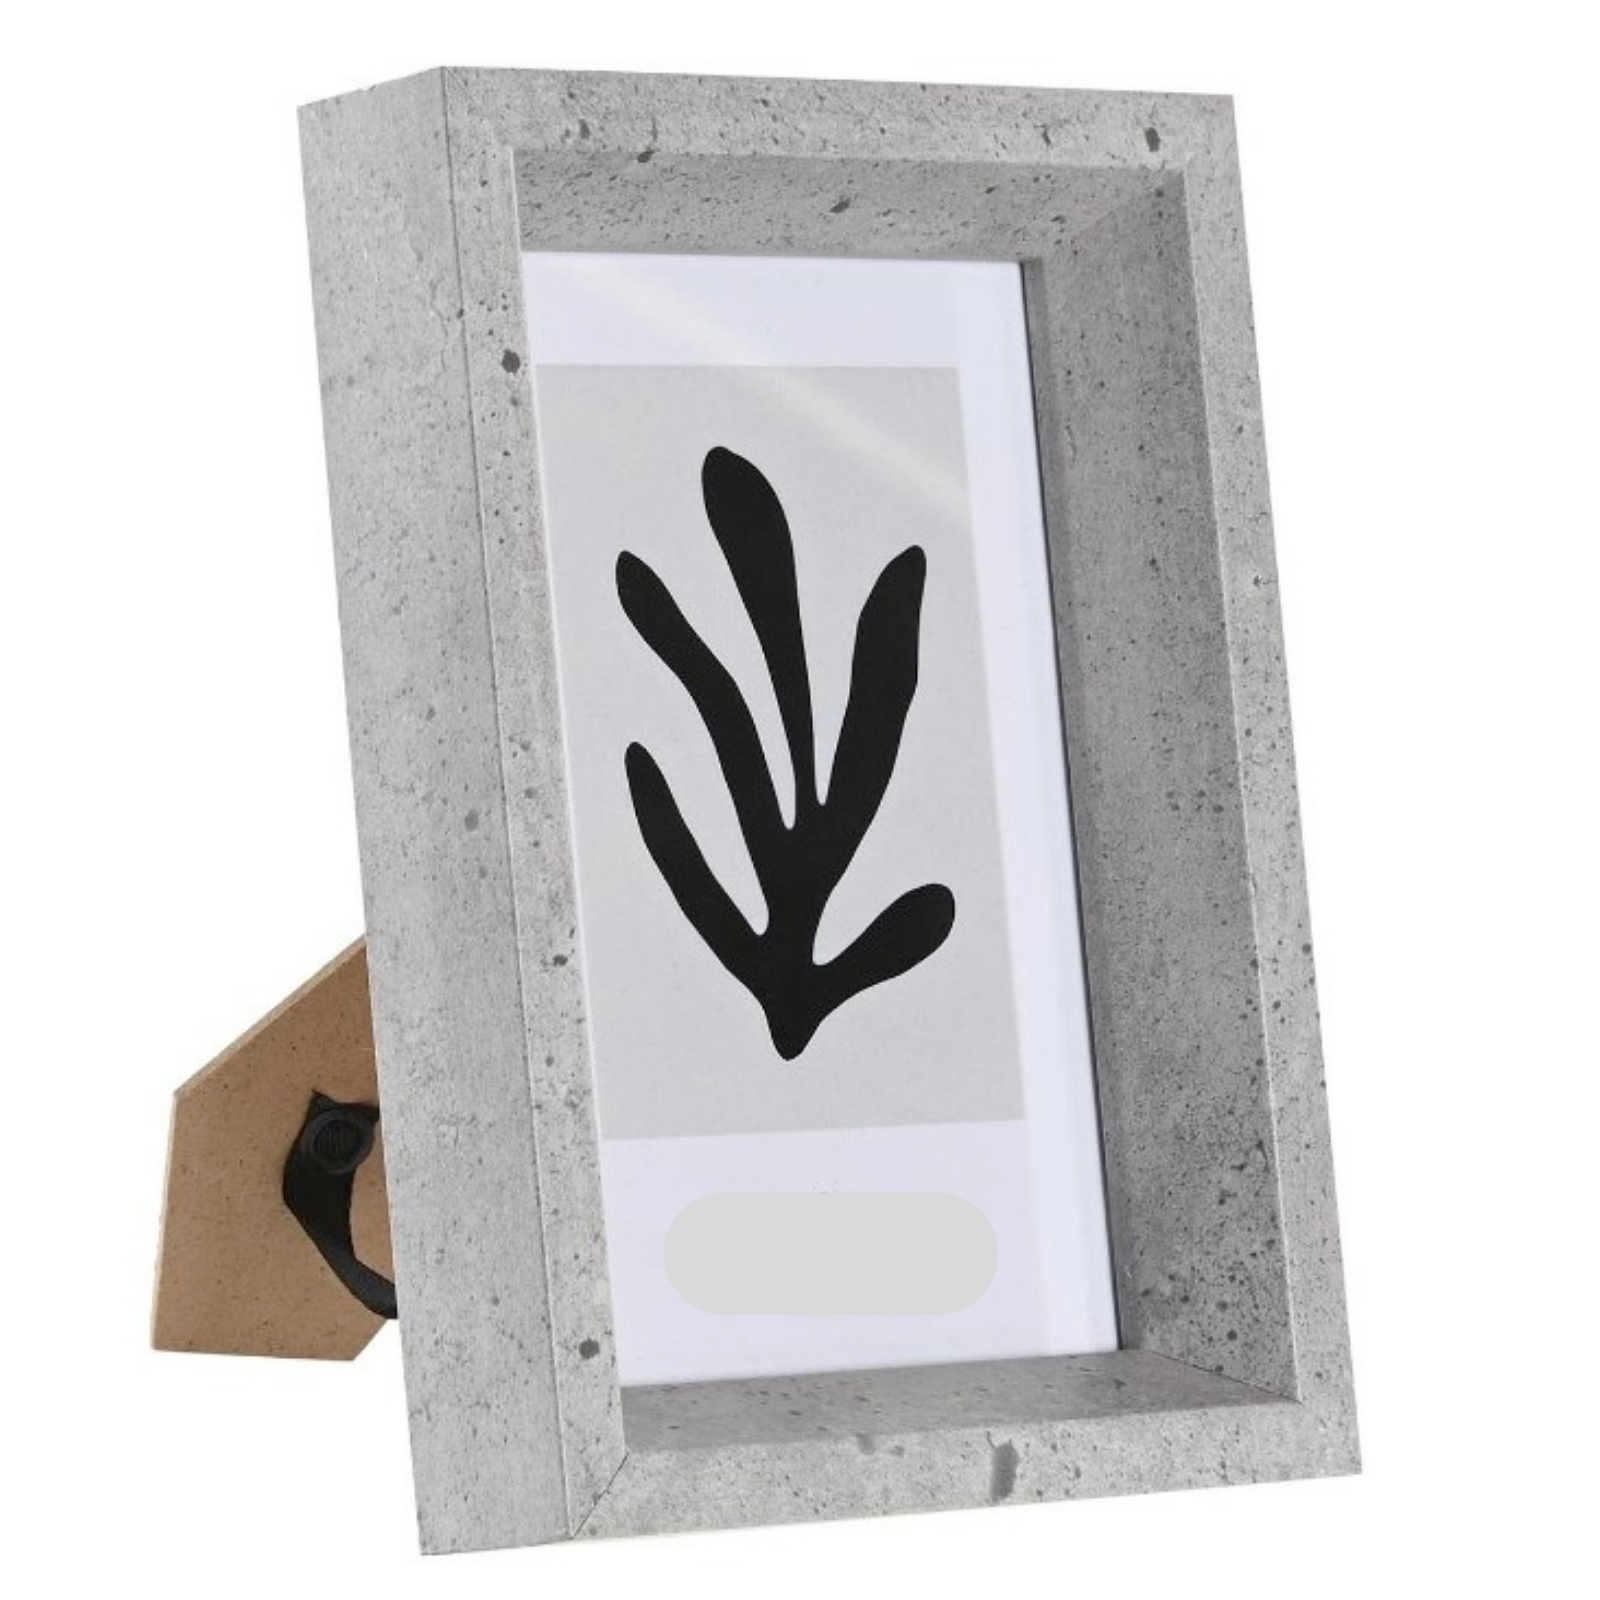 Cornice in legno "Iten" color cemento supporto in mdf per puzzle portafoto con vetro